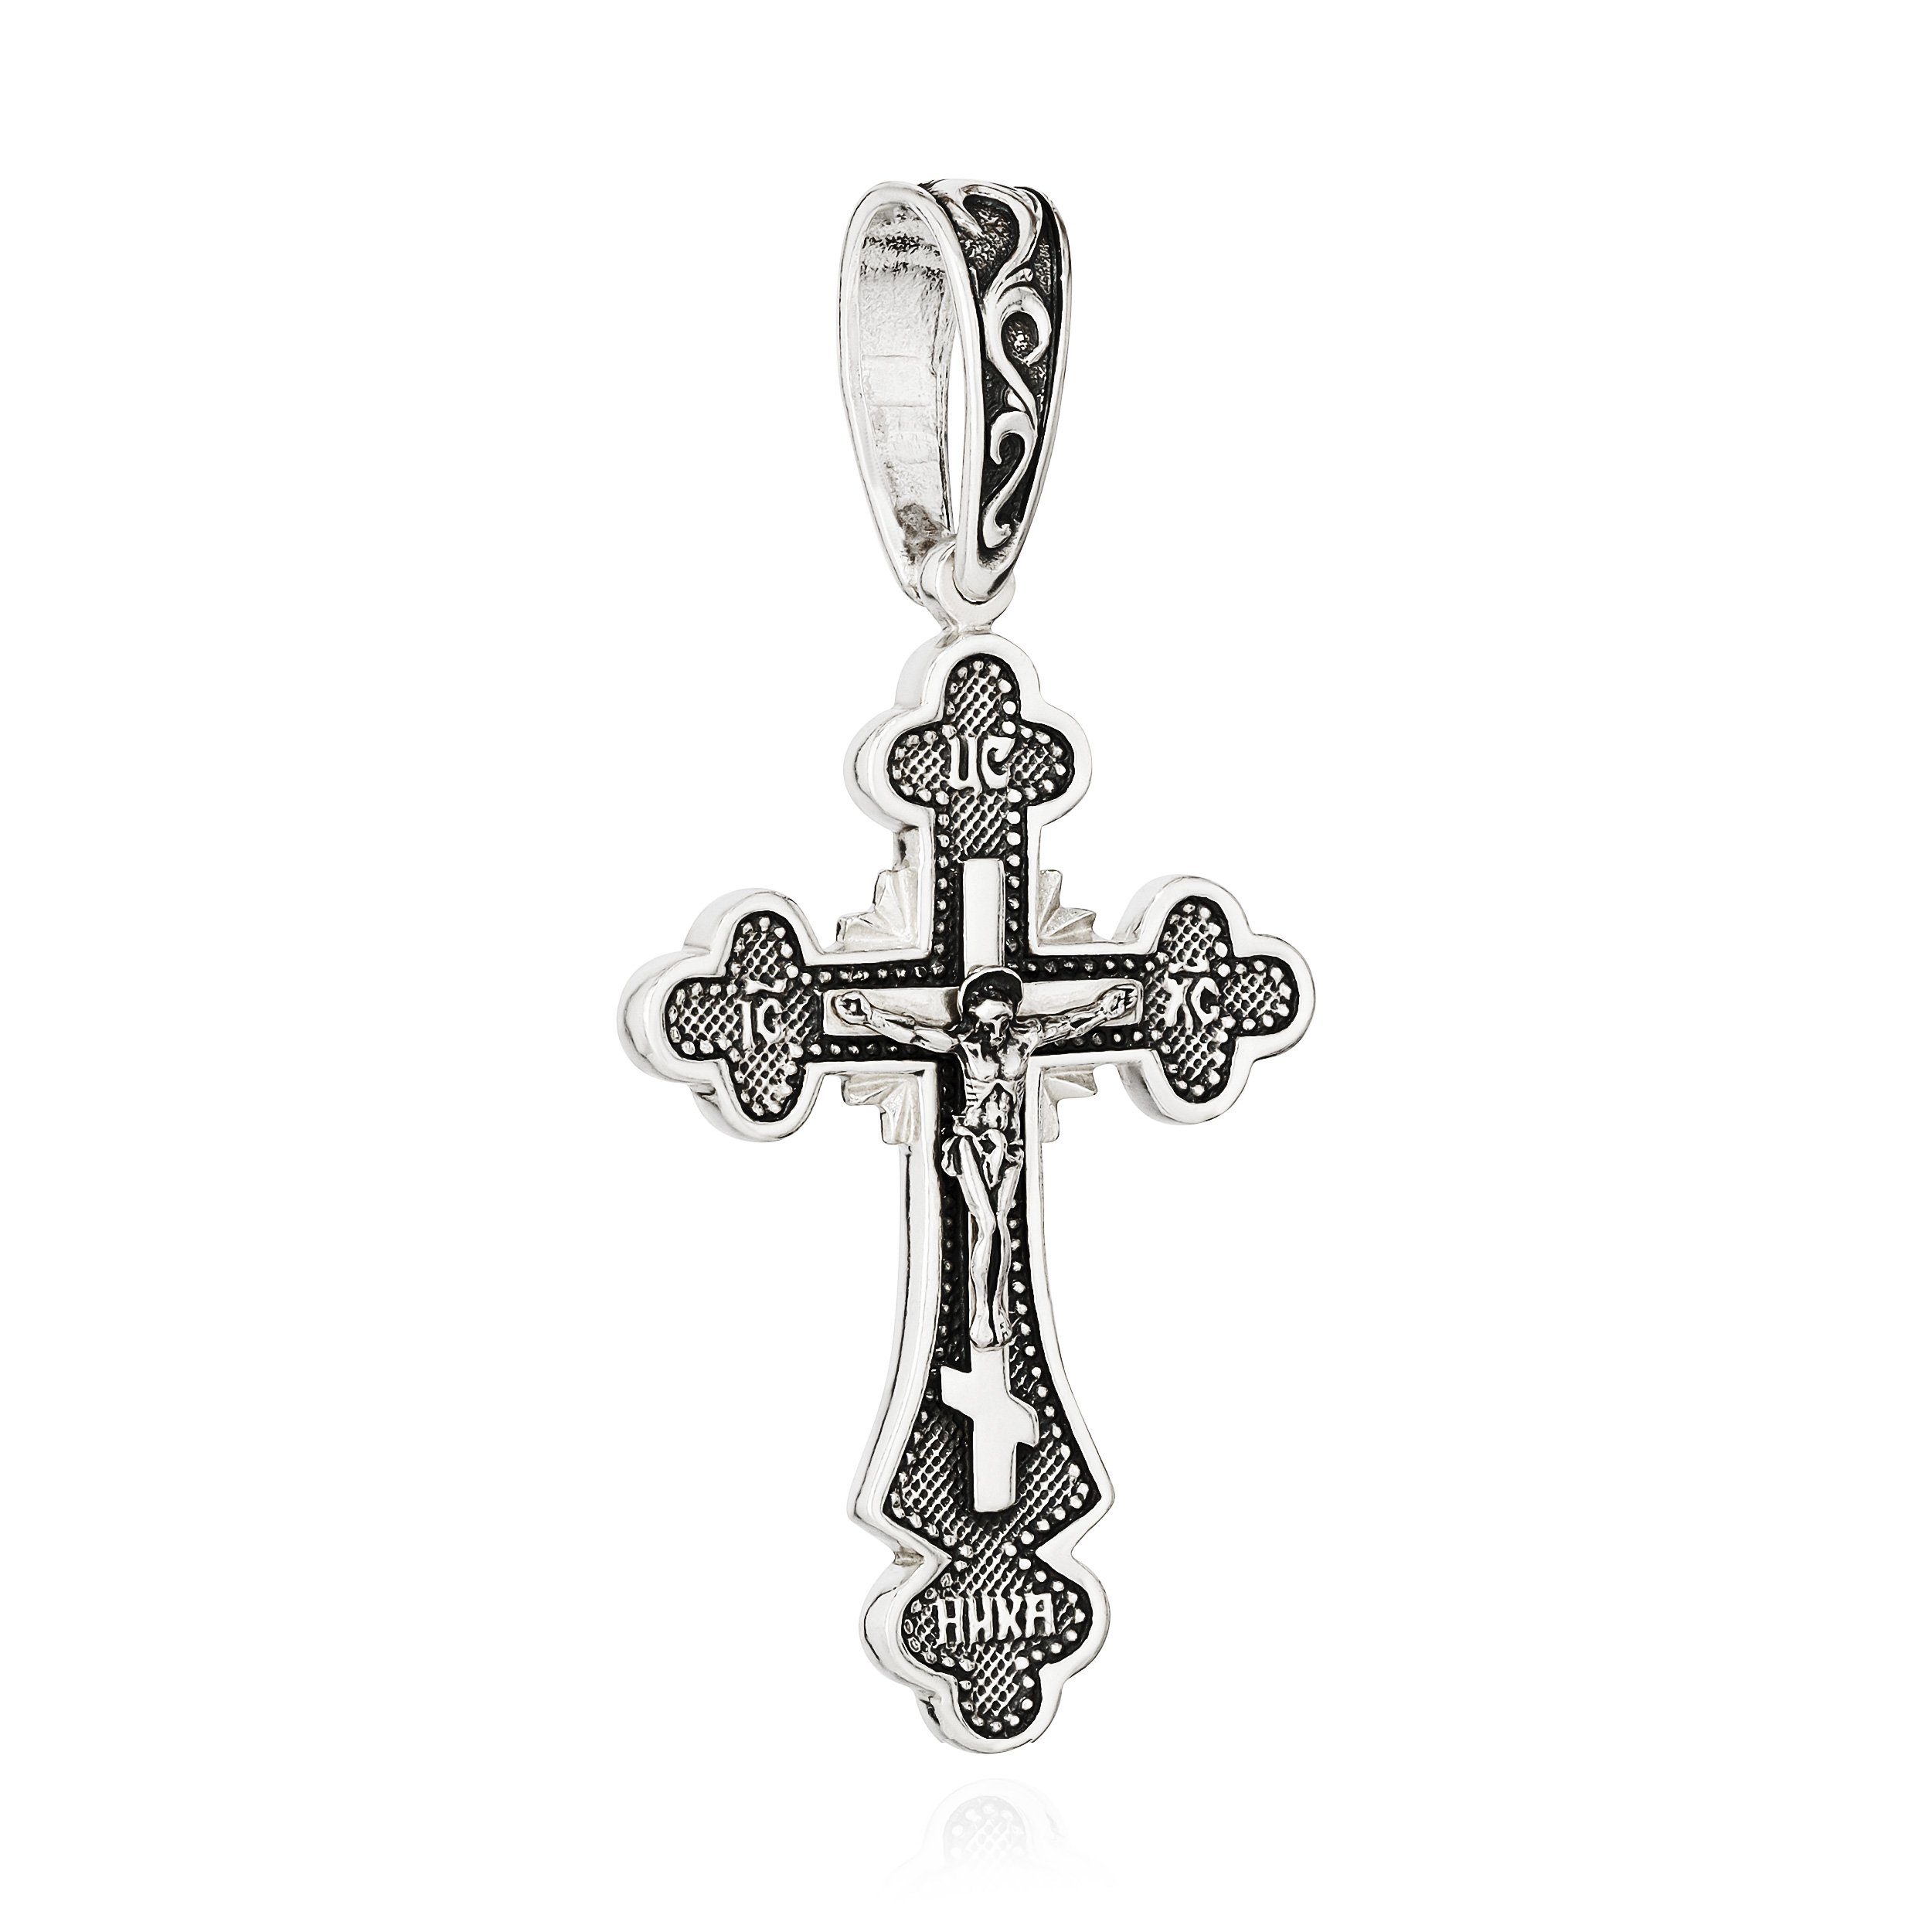 NKlaus Kettenanhänger 925 Silber Kreuzanhänger 44,4mm x 30mm Kruzifix Anhänger Jesus Christu